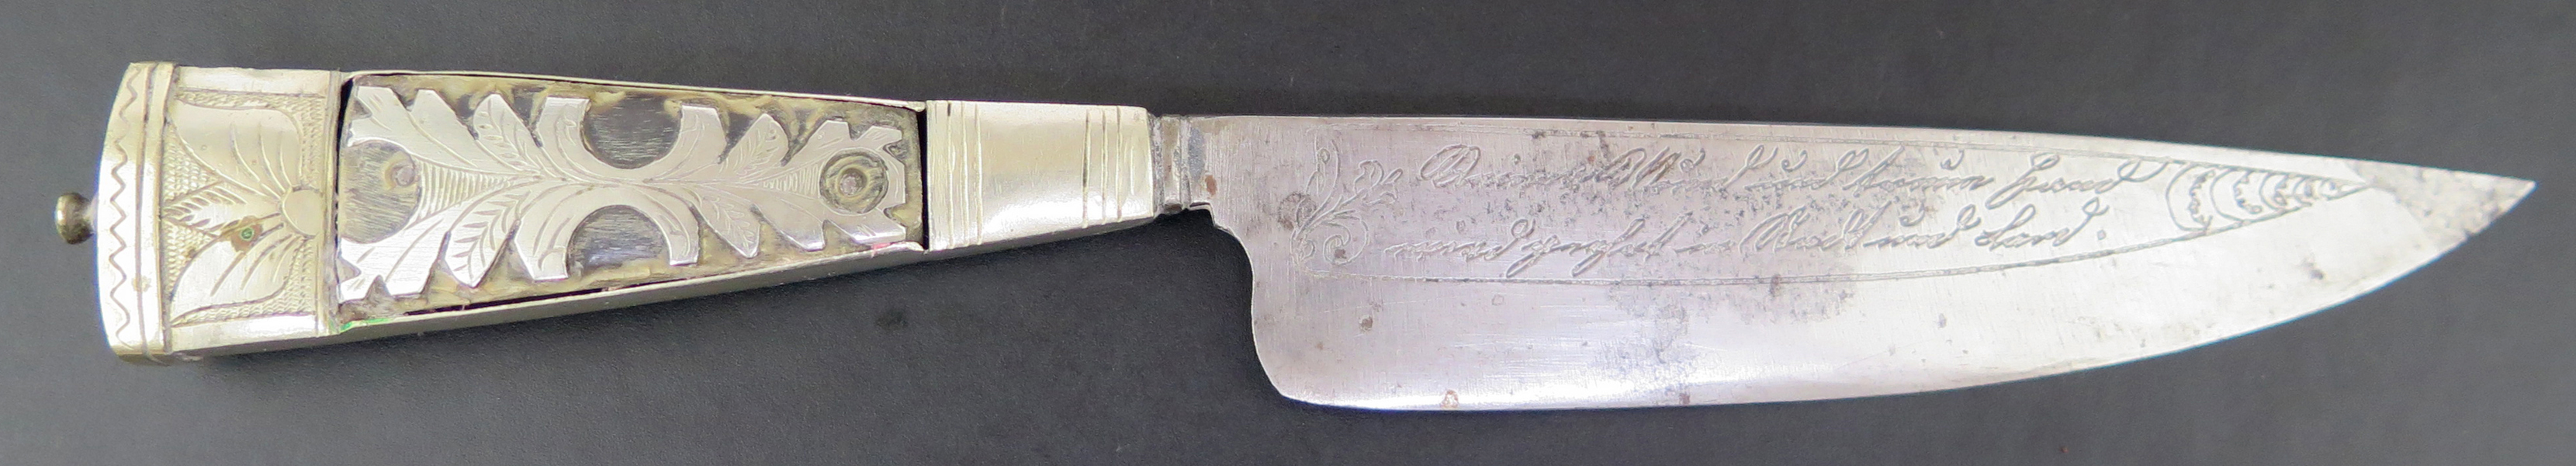 Kniv, smide med silverhandtag, så kallad gauchokniv, Arbentina, 18-1900-tal, svårtydd, etsad skrift på klingan, 1 kavelplatta defekt, l 24 cm_29637a_8db732f74603927_lg.jpeg